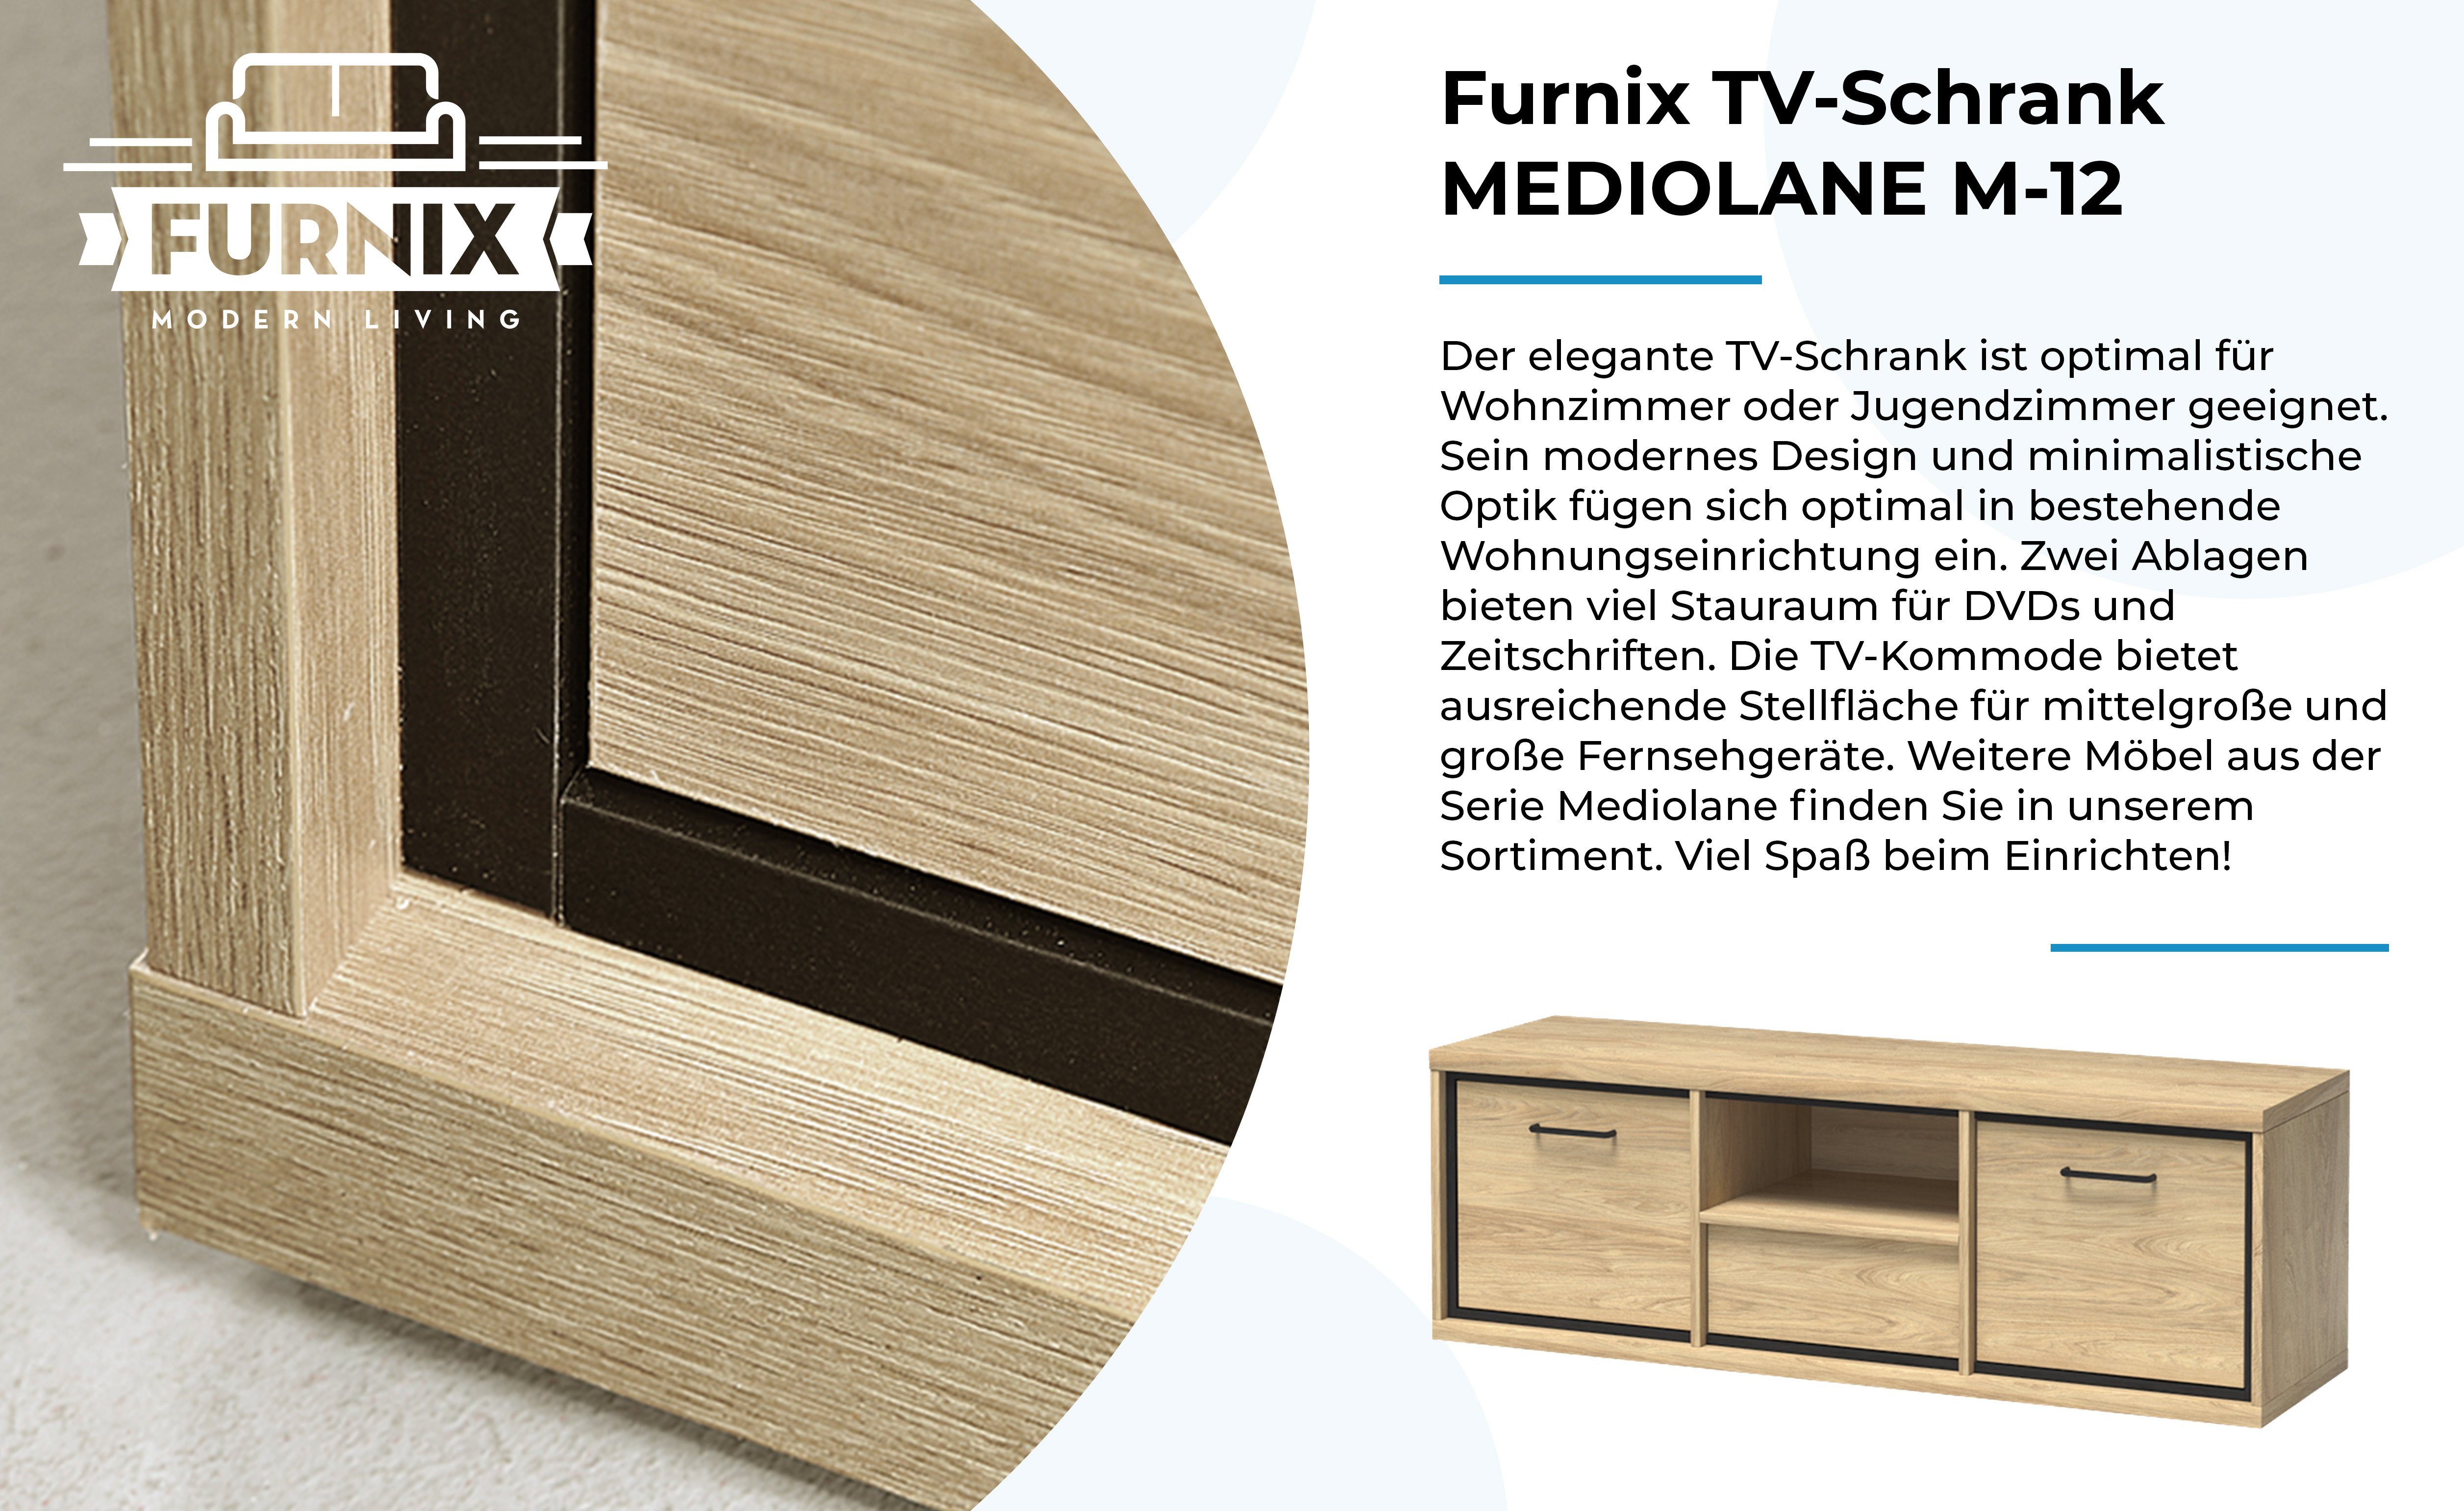 Furnix TV-Schrank MEDIOLANE M-12 x cm B139 TV-Kommode, H47,5 Wotan RTV-Schrank Hängende x Lowboard, T41